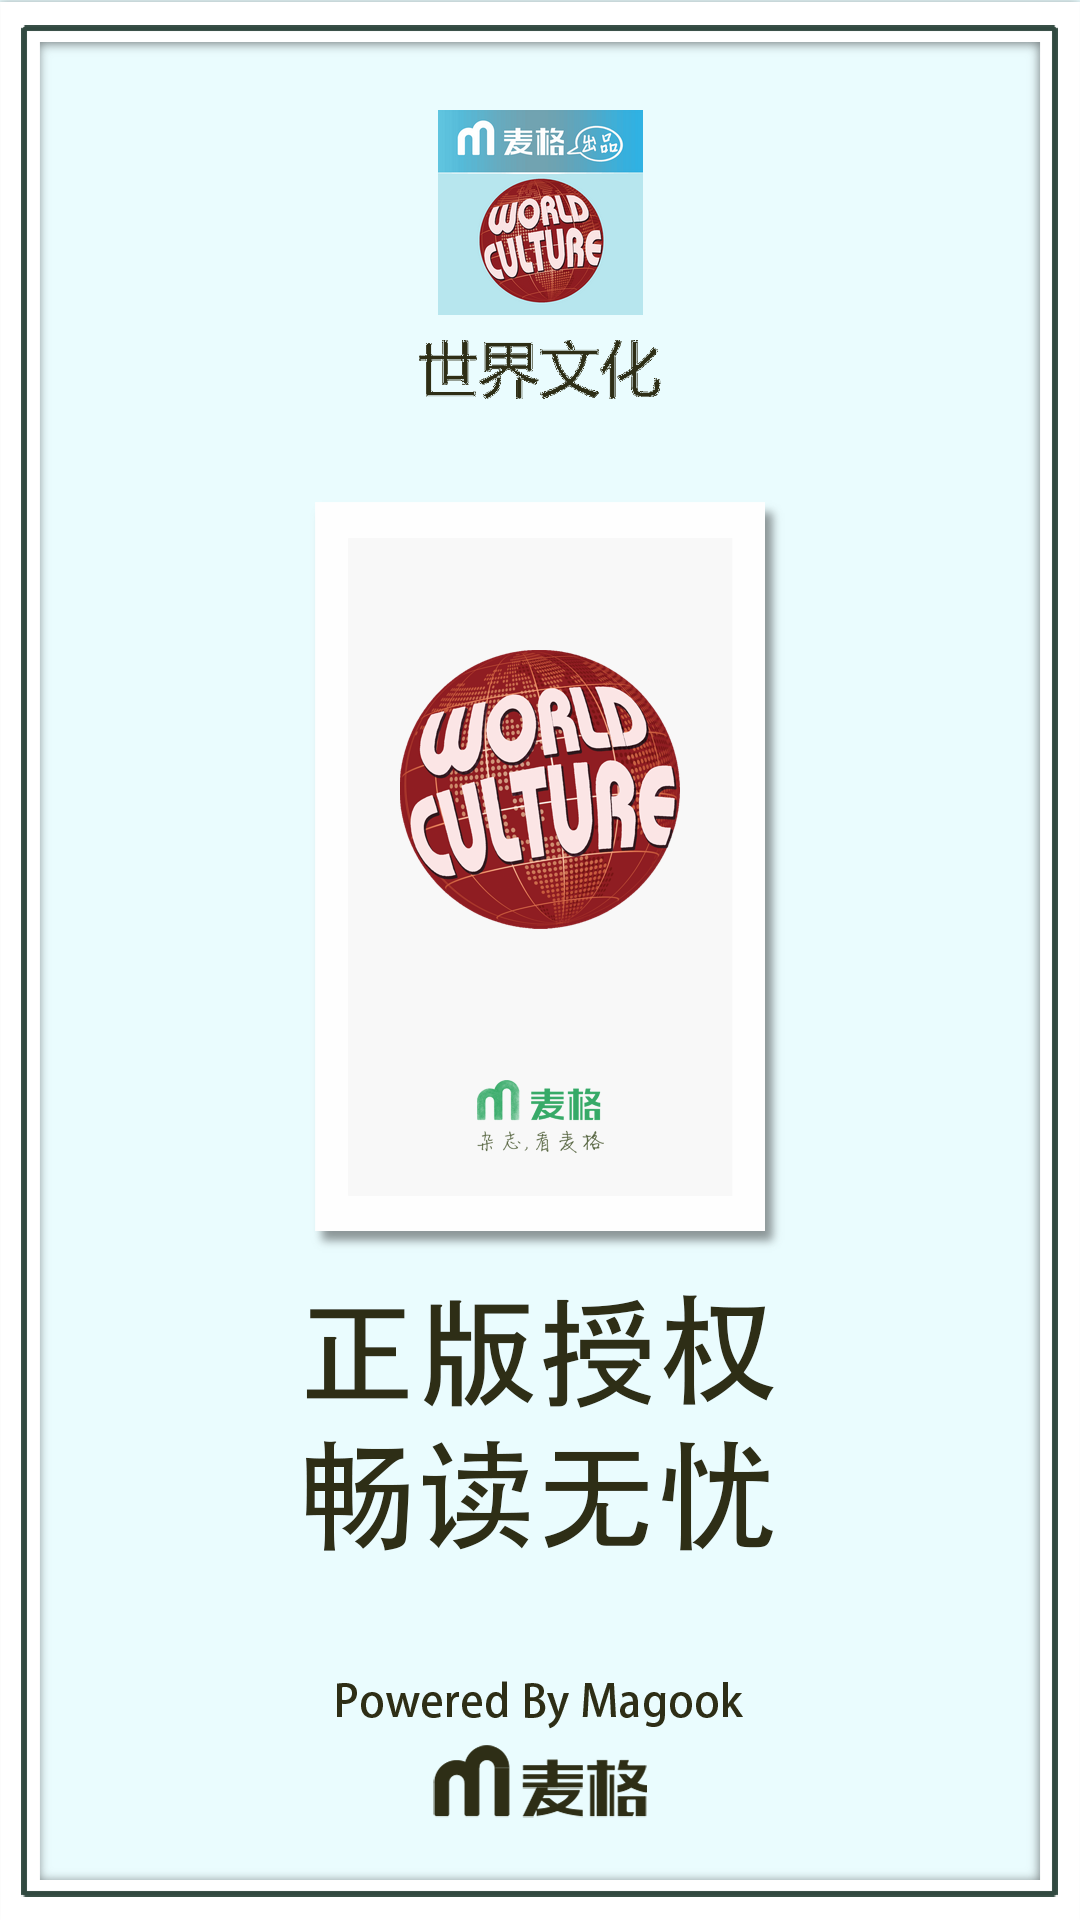 世界文化截图1